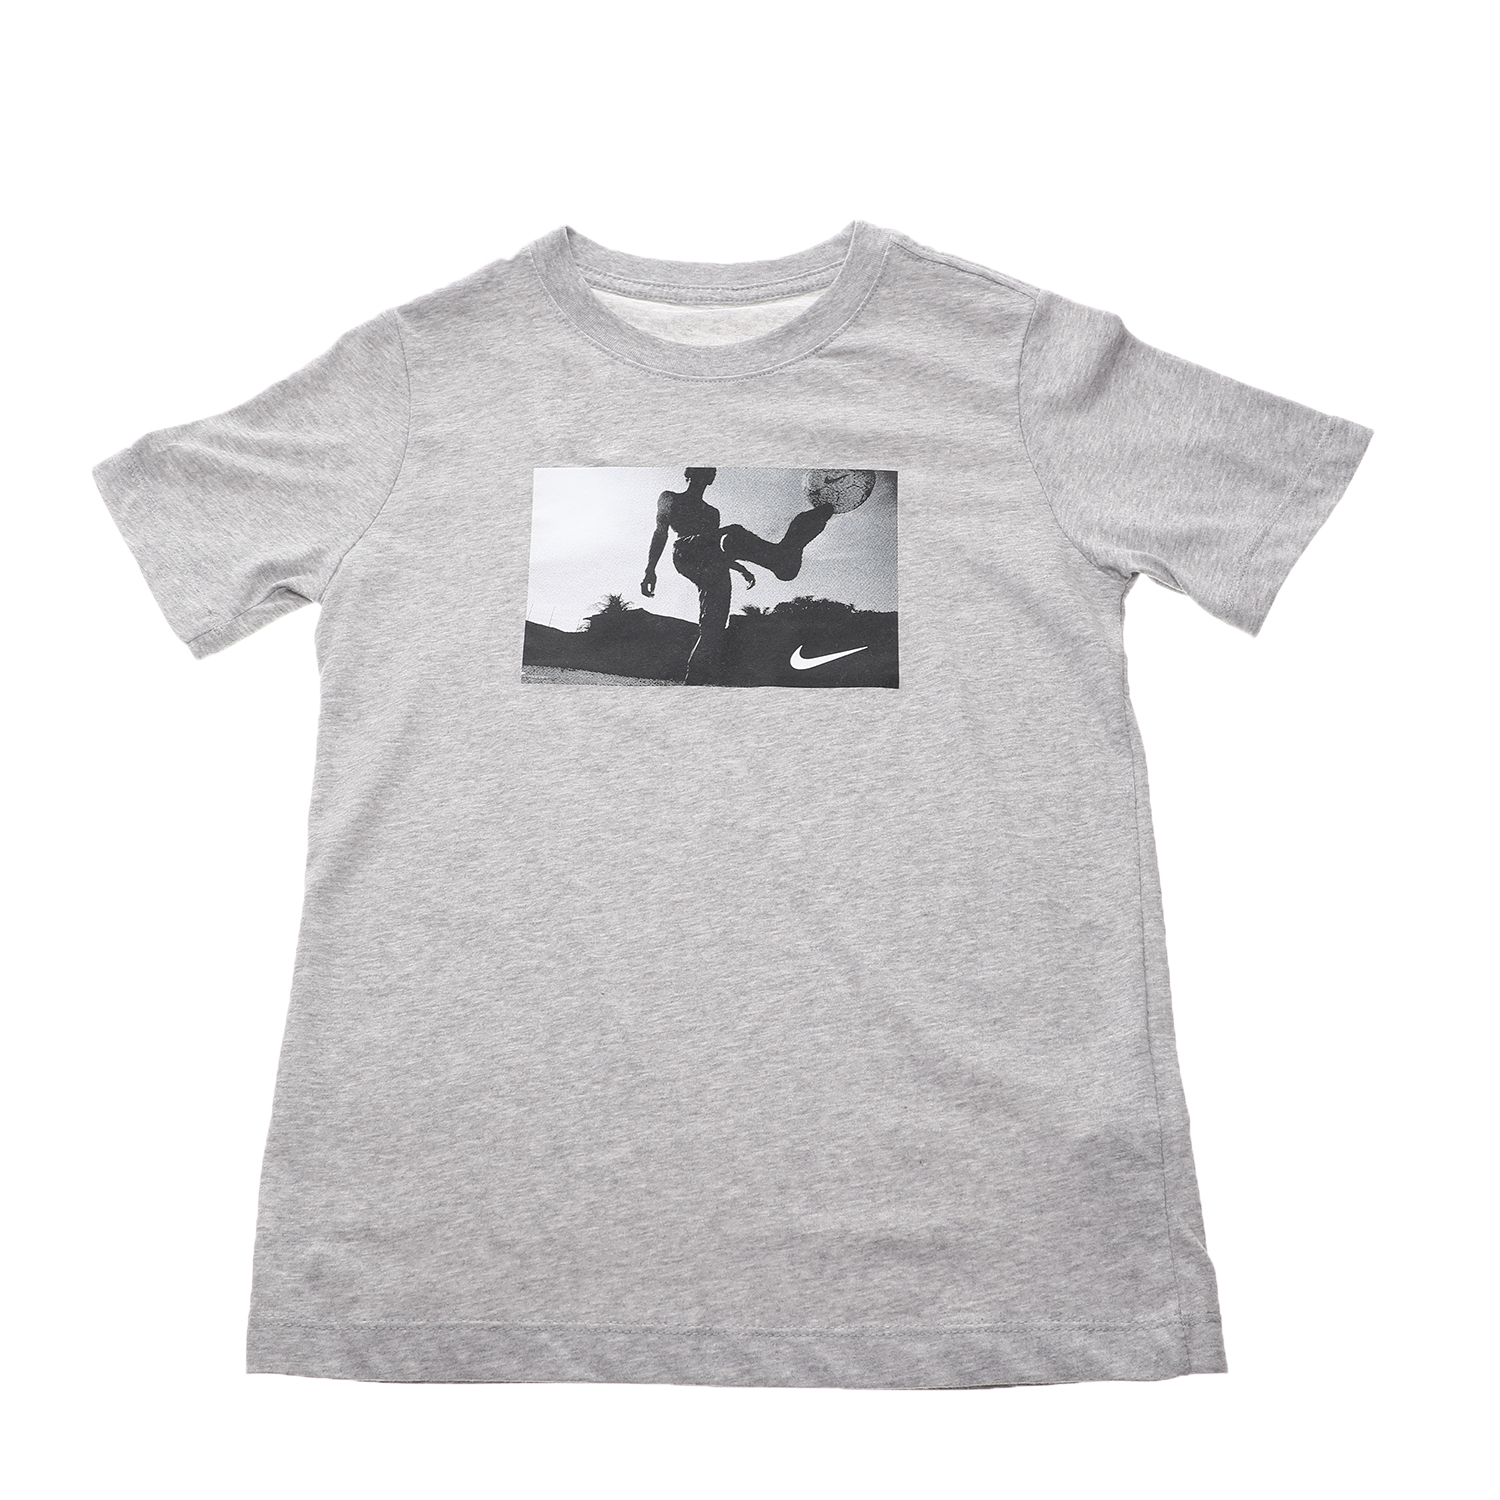 Παιδικά/Boys/Ρούχα/Αθλητικά NIKE - Παιδικό t-shirt NIKE DRY TEE DFC SOCCER PHOTO γκρι